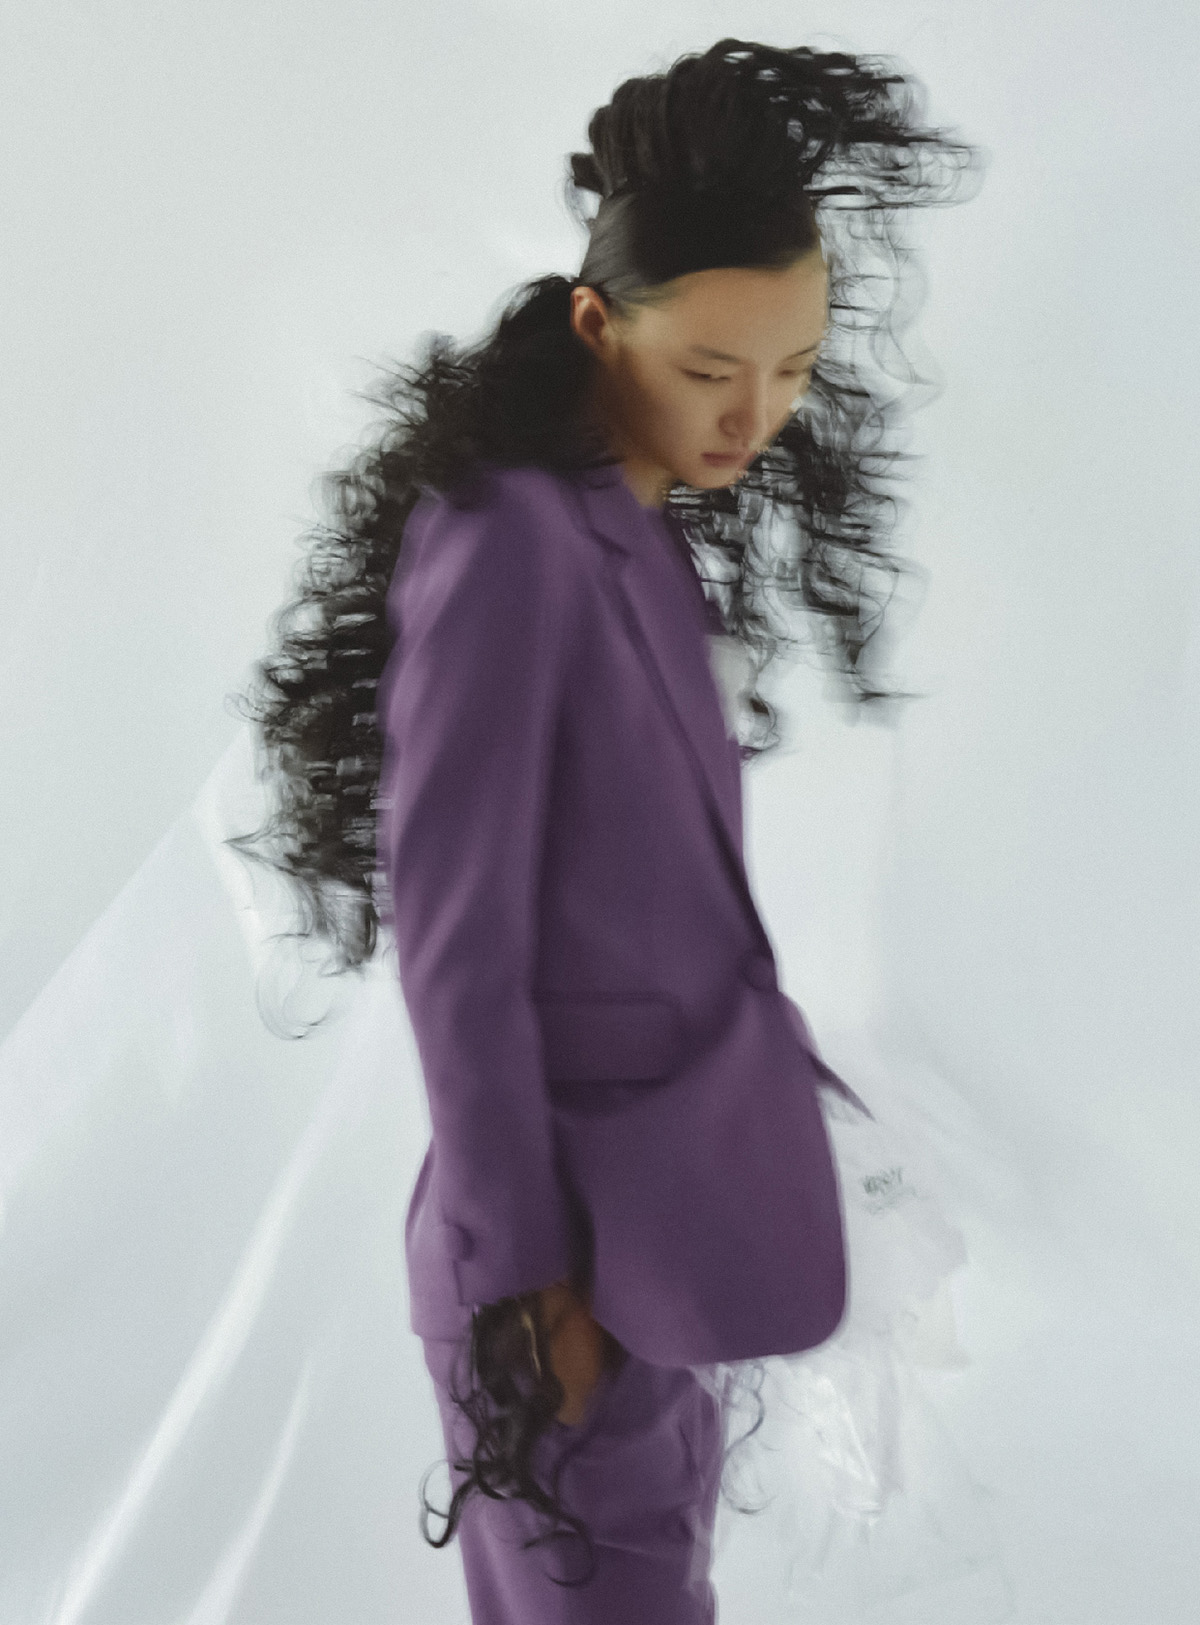 Vanessa Pan by Hazel Chiu for Vogue Taiwan January 2022